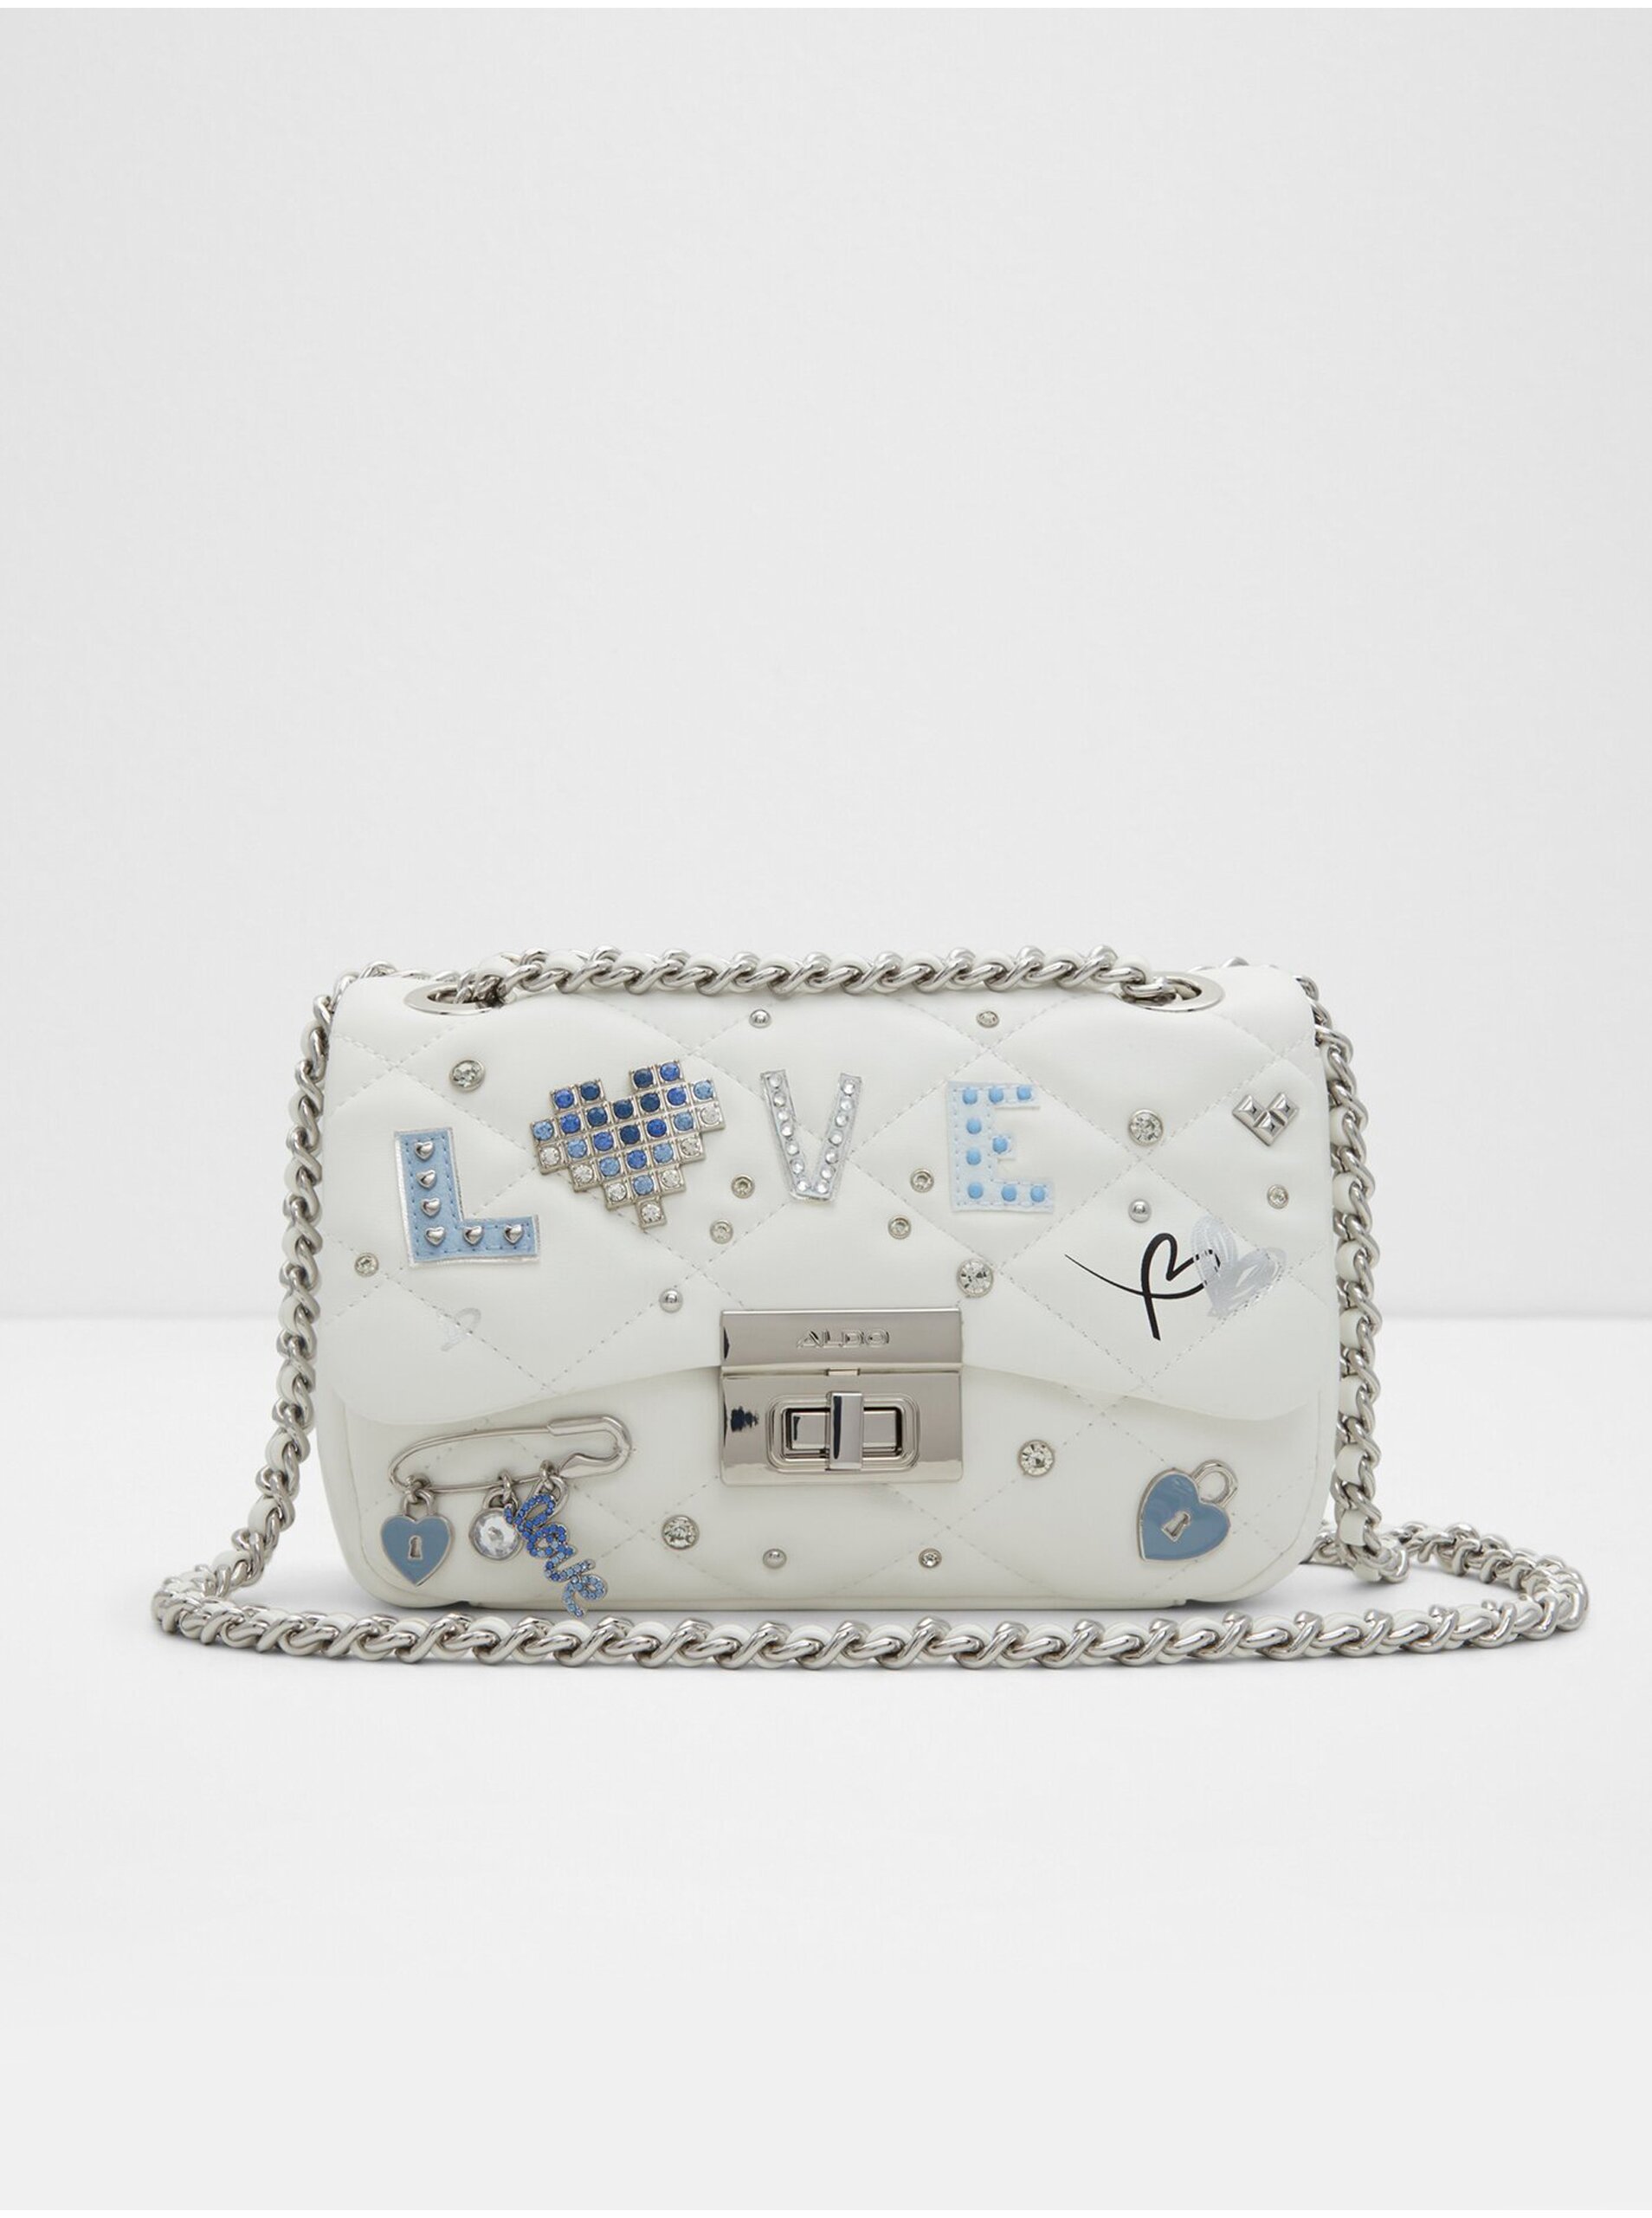 Lacno Biela dámska crossbody kabelka s ozdobnými detailmi ALDO Digilovebag